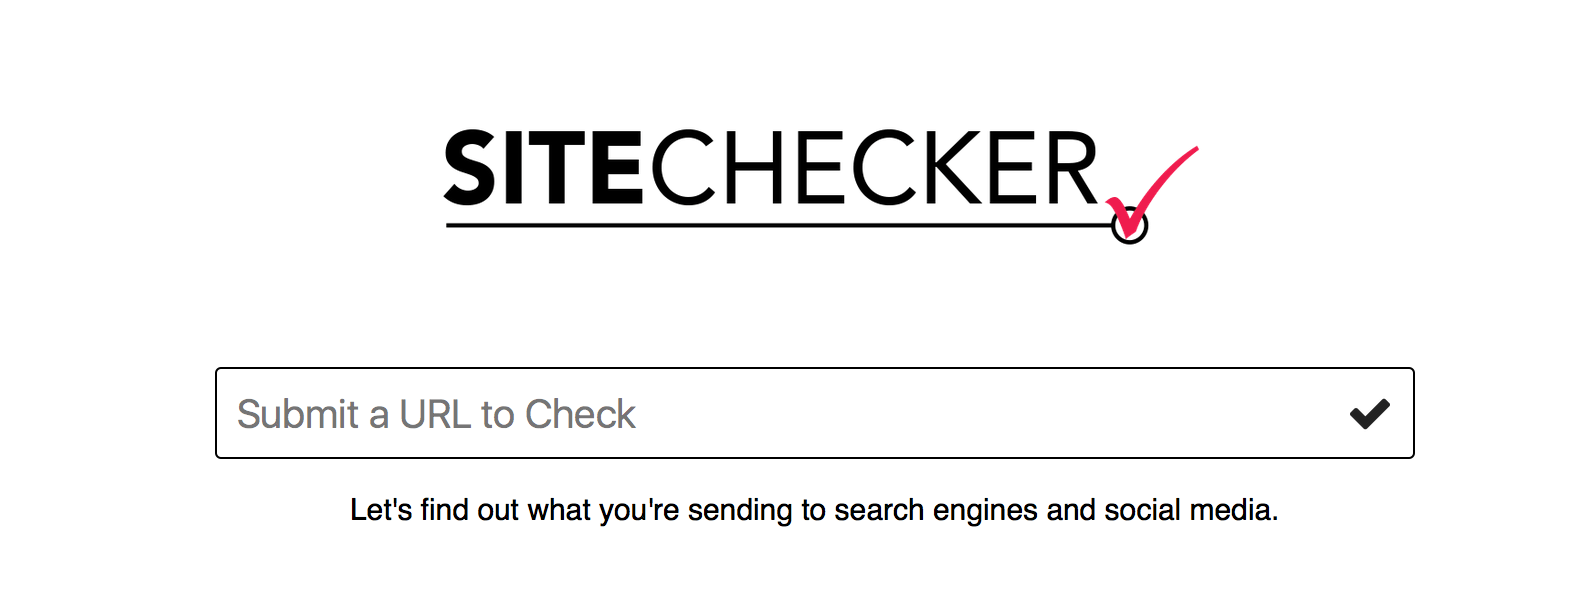 Site Checker